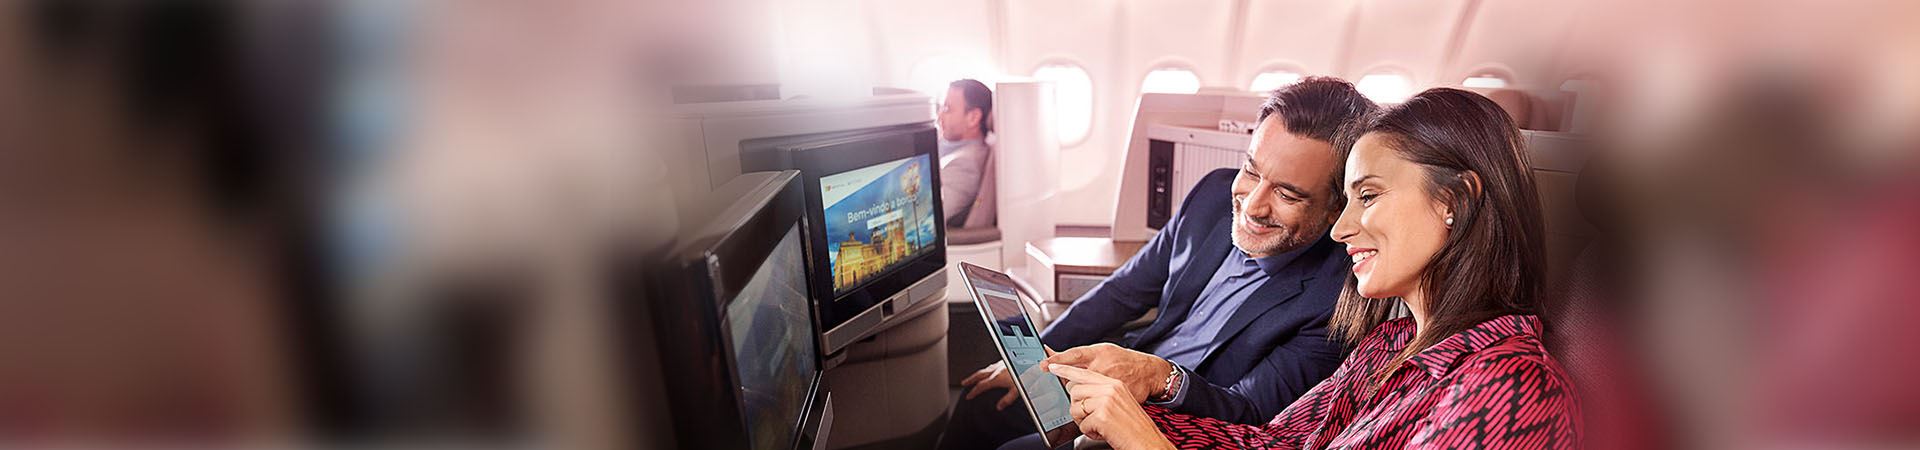 Primo piano di una donna e di un uomo sorridenti seduti a bordo di un aereo. La donna ha in mano un tablet e l'uomo lo sta guardando. Entrambi indicano lo schermo del tablet. Di fronte a loro ci sono due schermi, incorporati nei sedili dell'aereo.